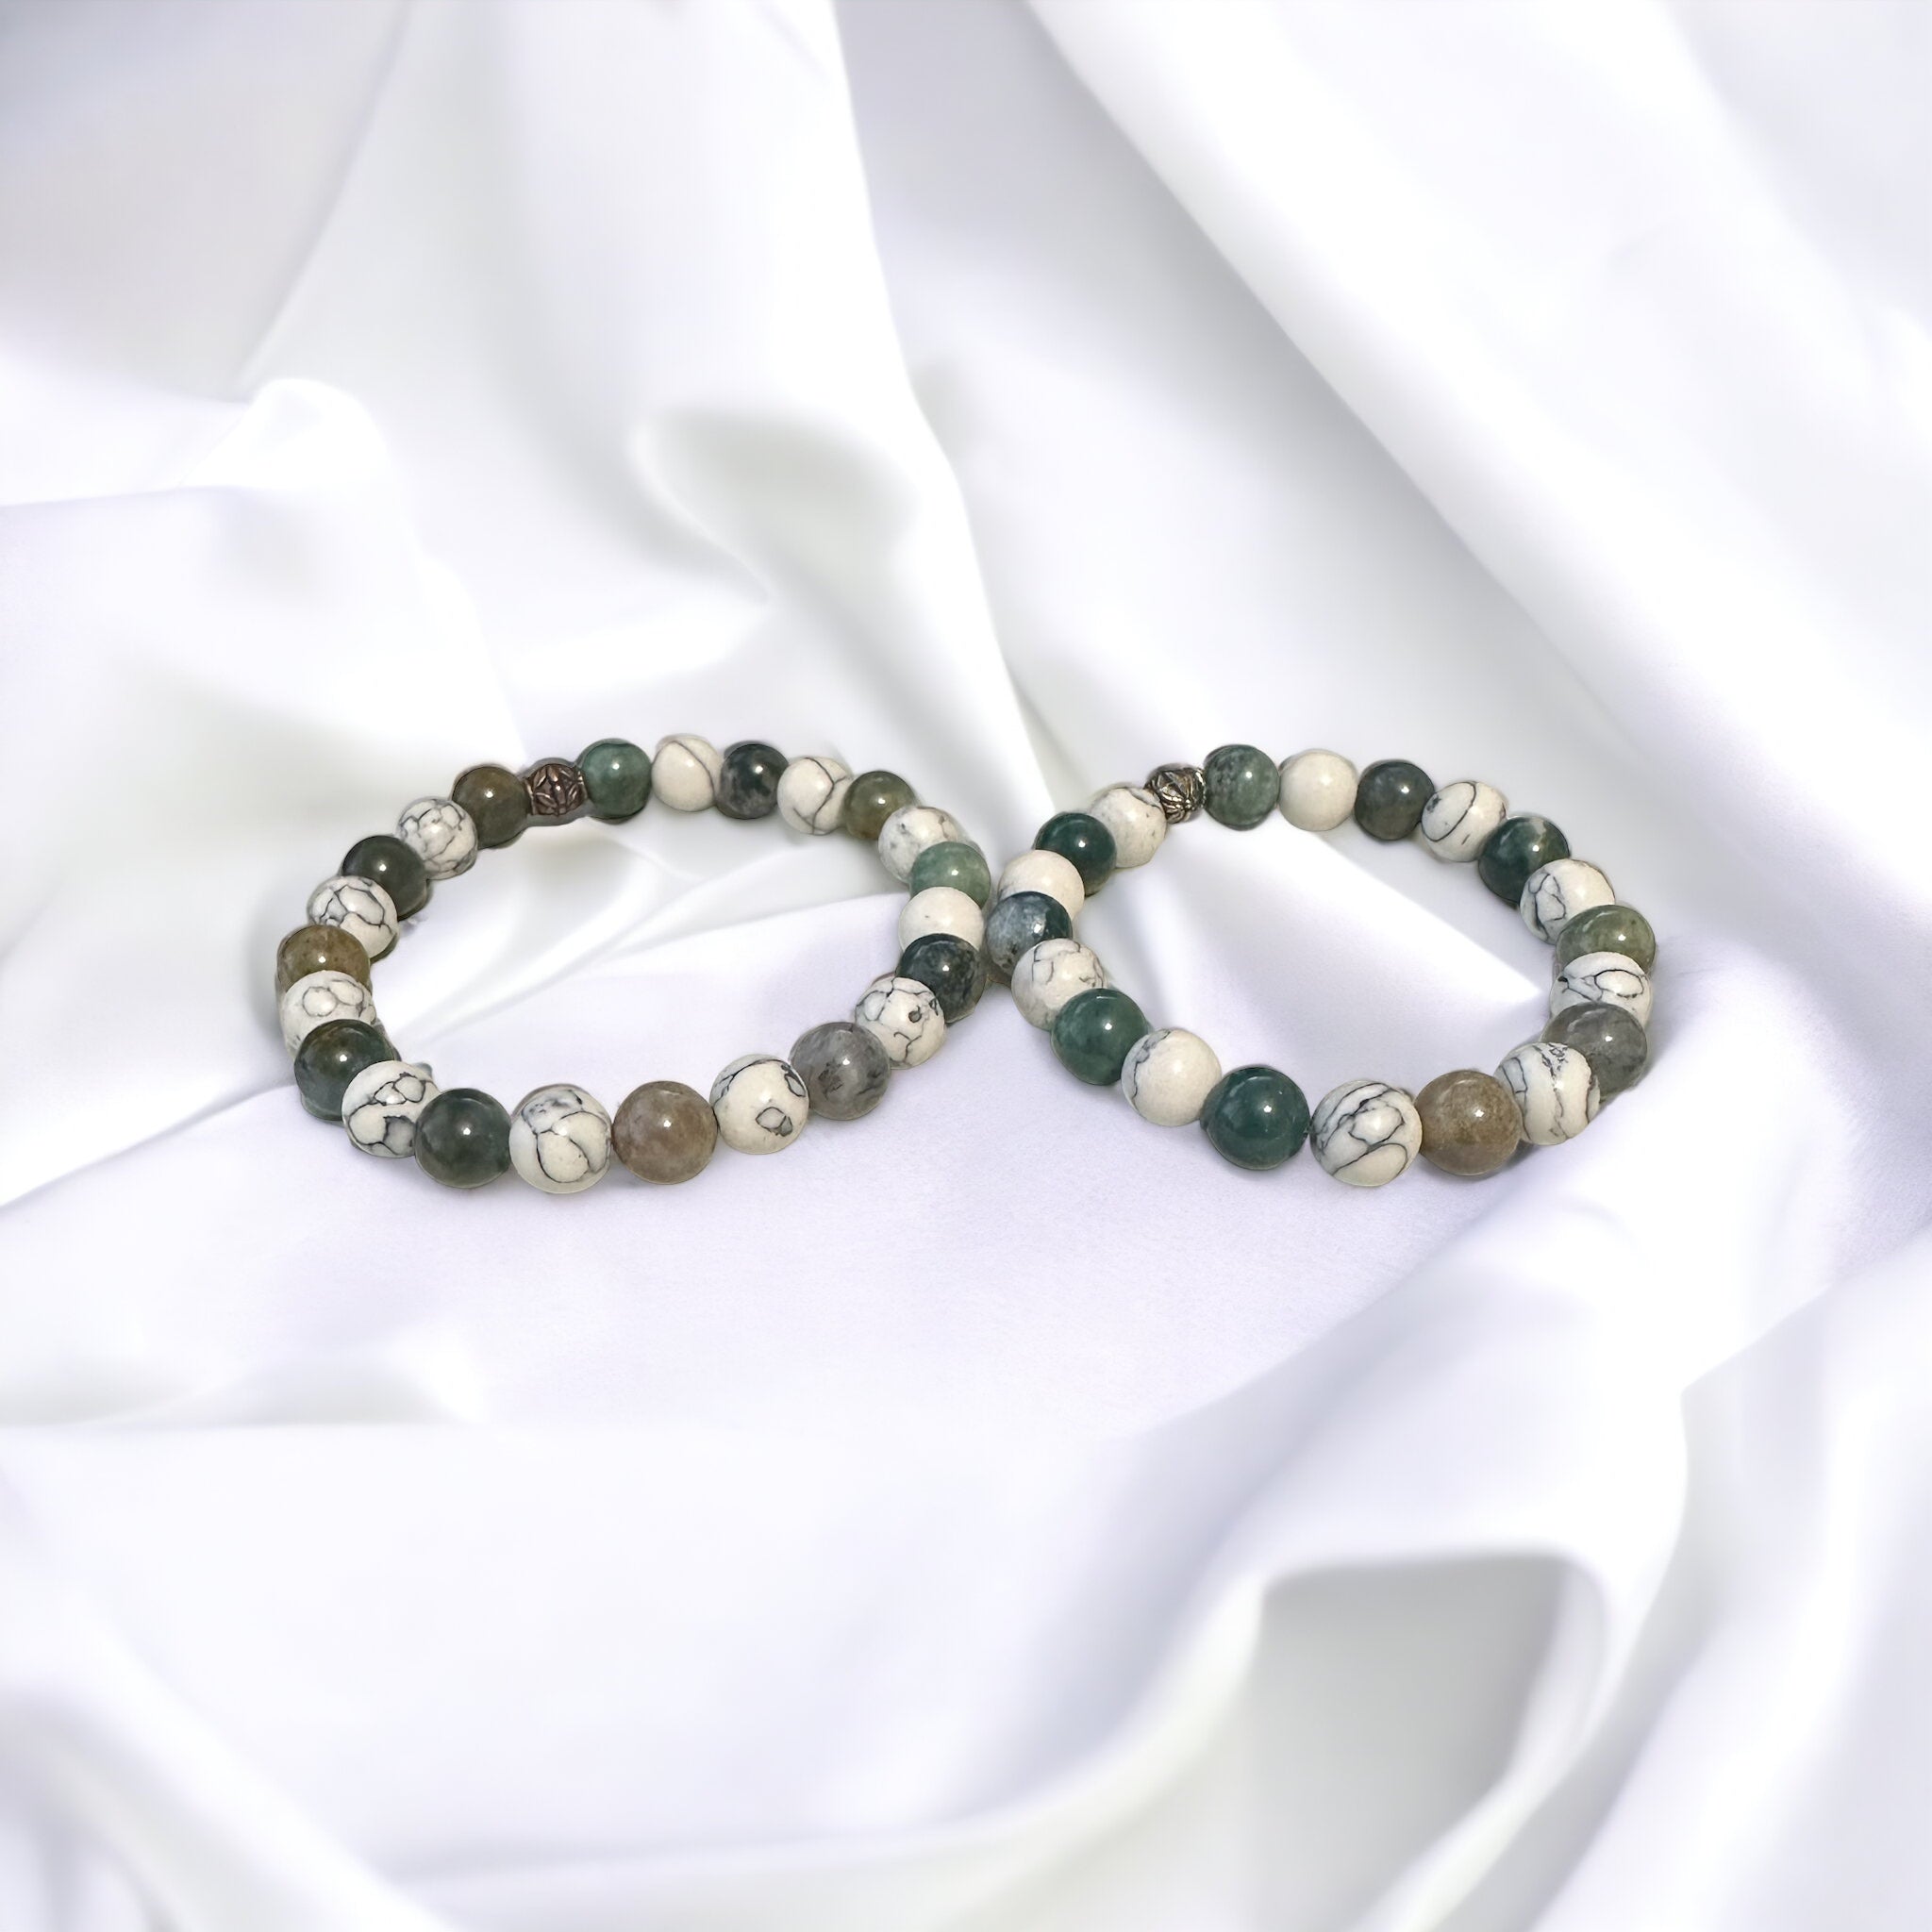 Fancy Beads - 8mm Howlite & Indian Agate Bracelet